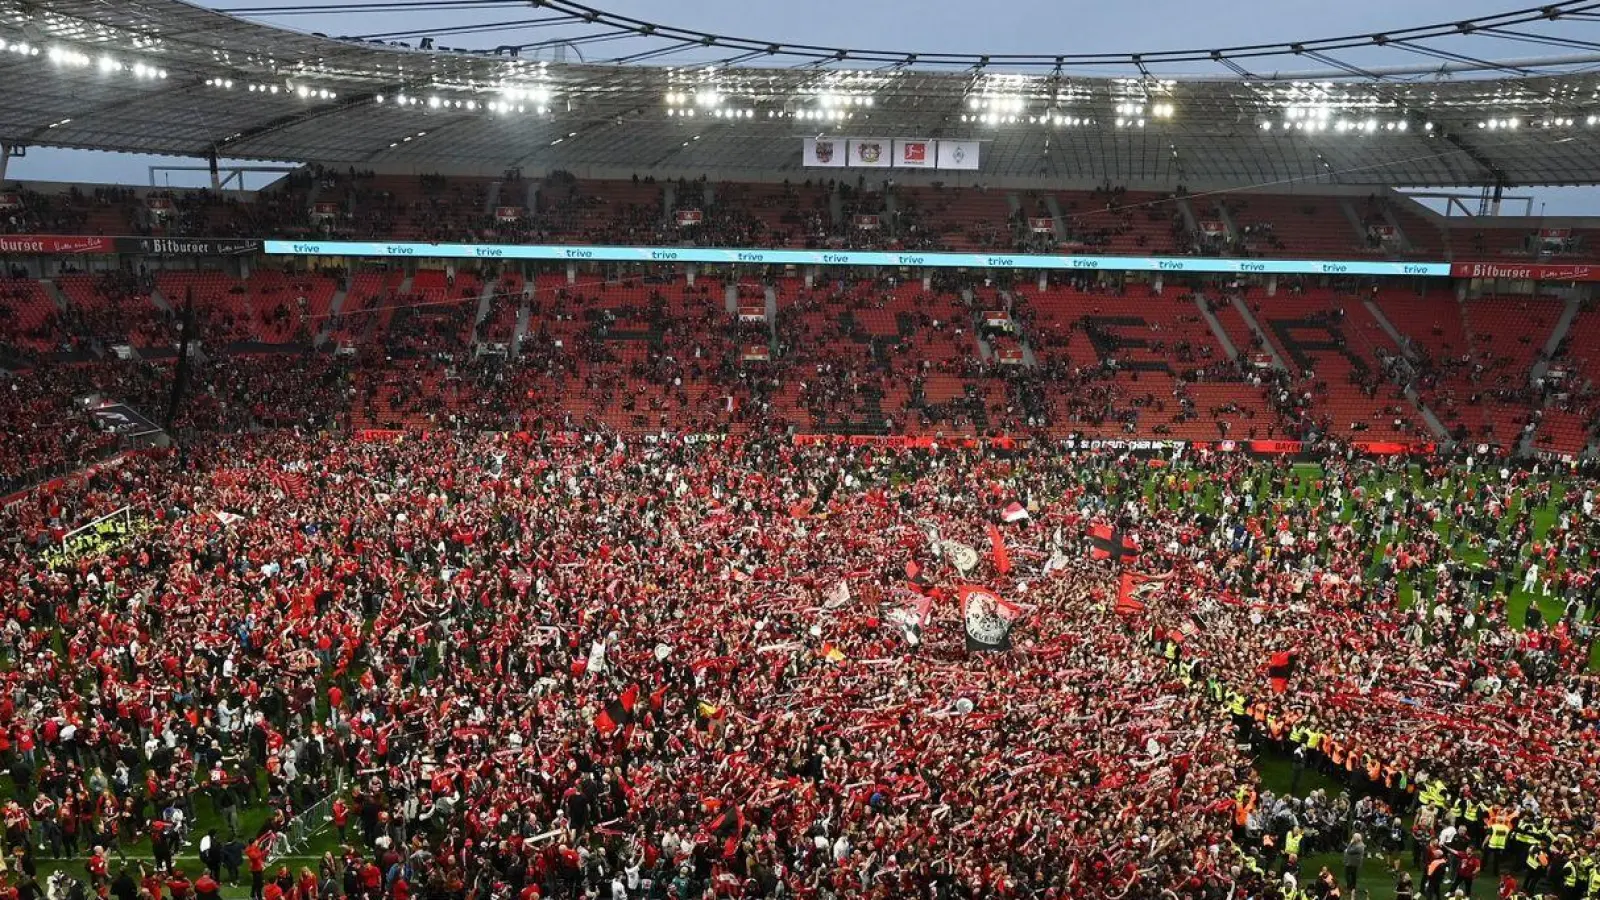 Leverkusens Fans bejubeln auf dem Rasen den Gewinn der Deutschen Meisterschaft. (Foto: David Inderlied/dpa)